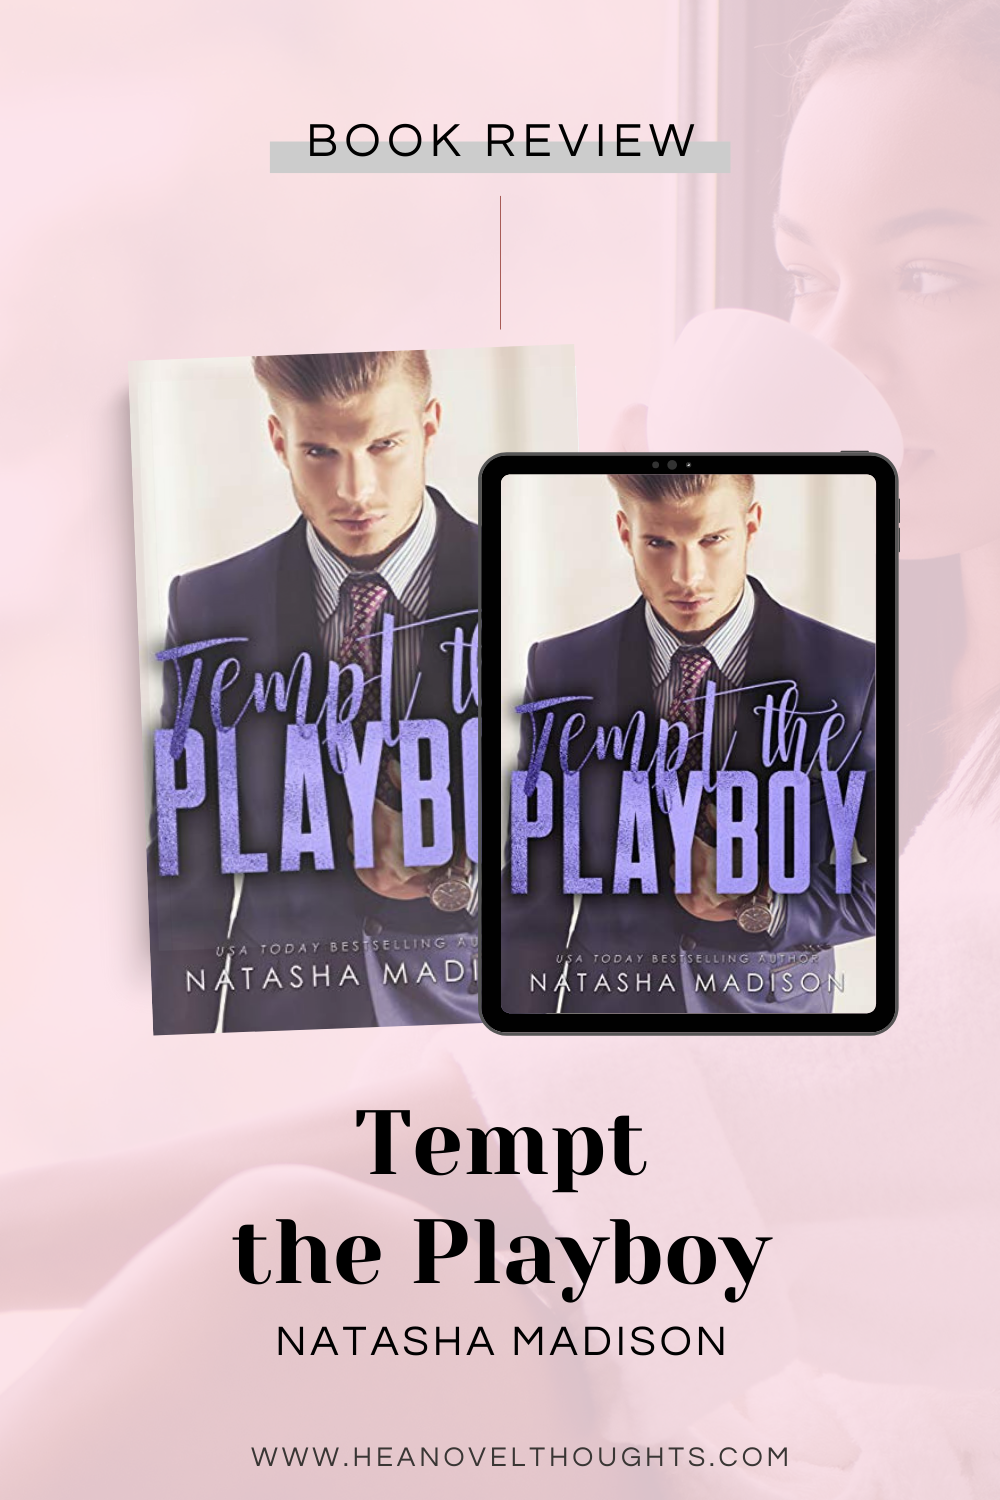 Tempt the Playboy by Natasha Madison